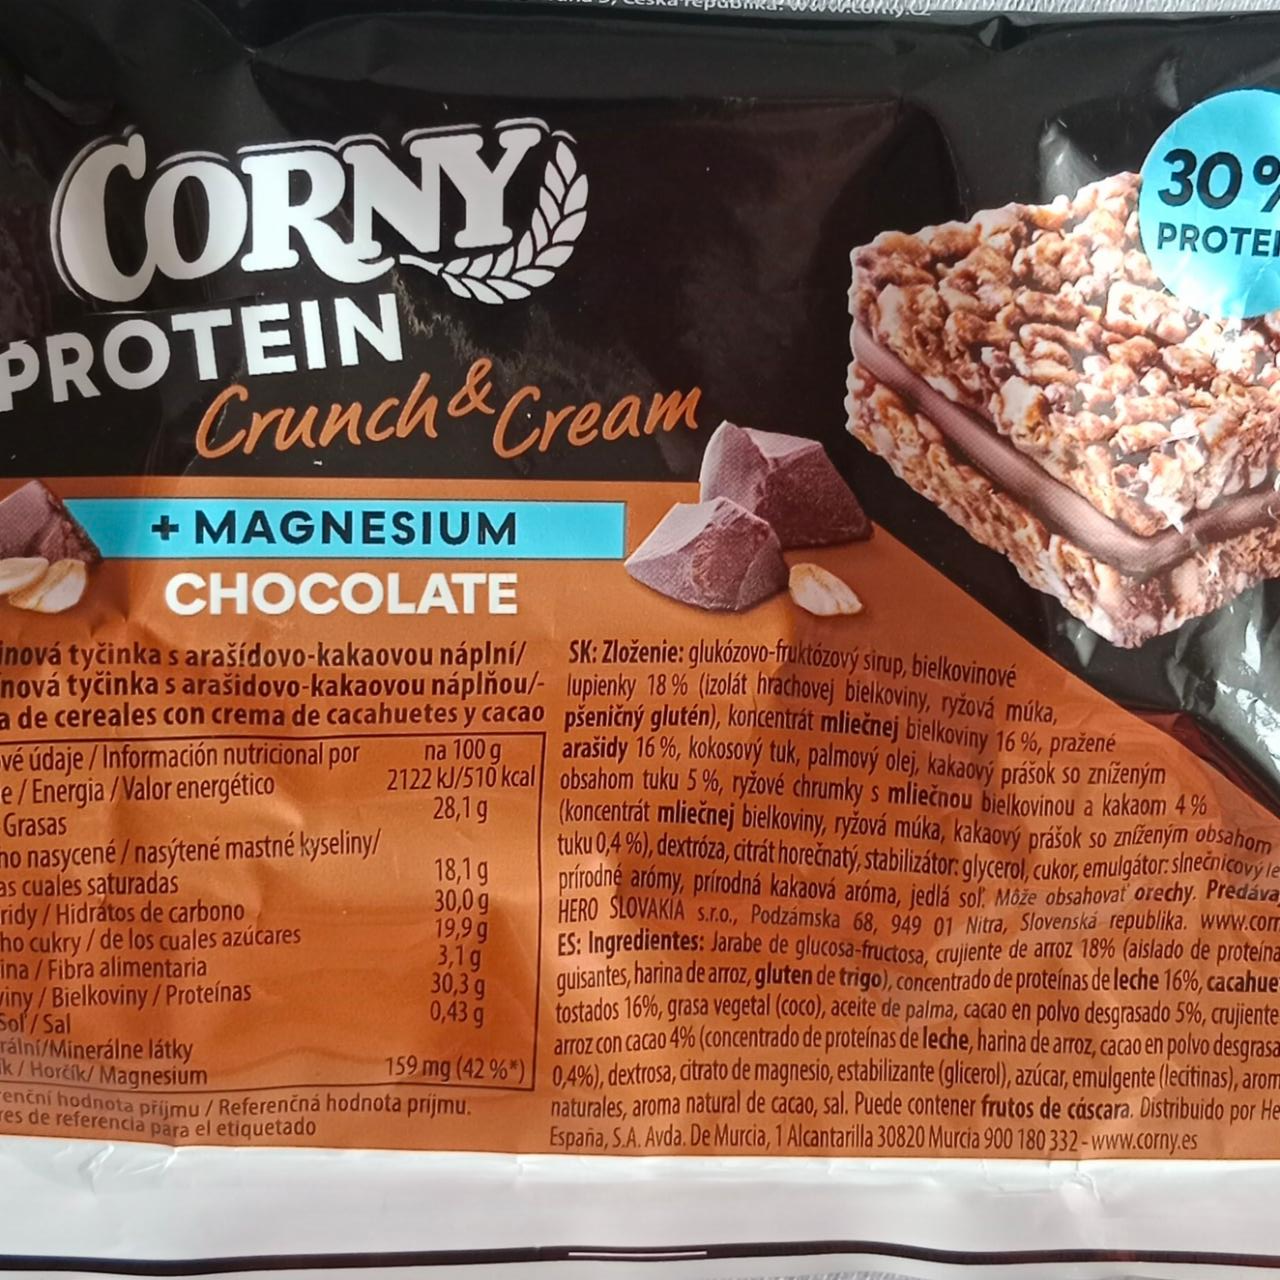 Fotografie - Protein Crunch & Cream + Magnesium Chocolate Corny